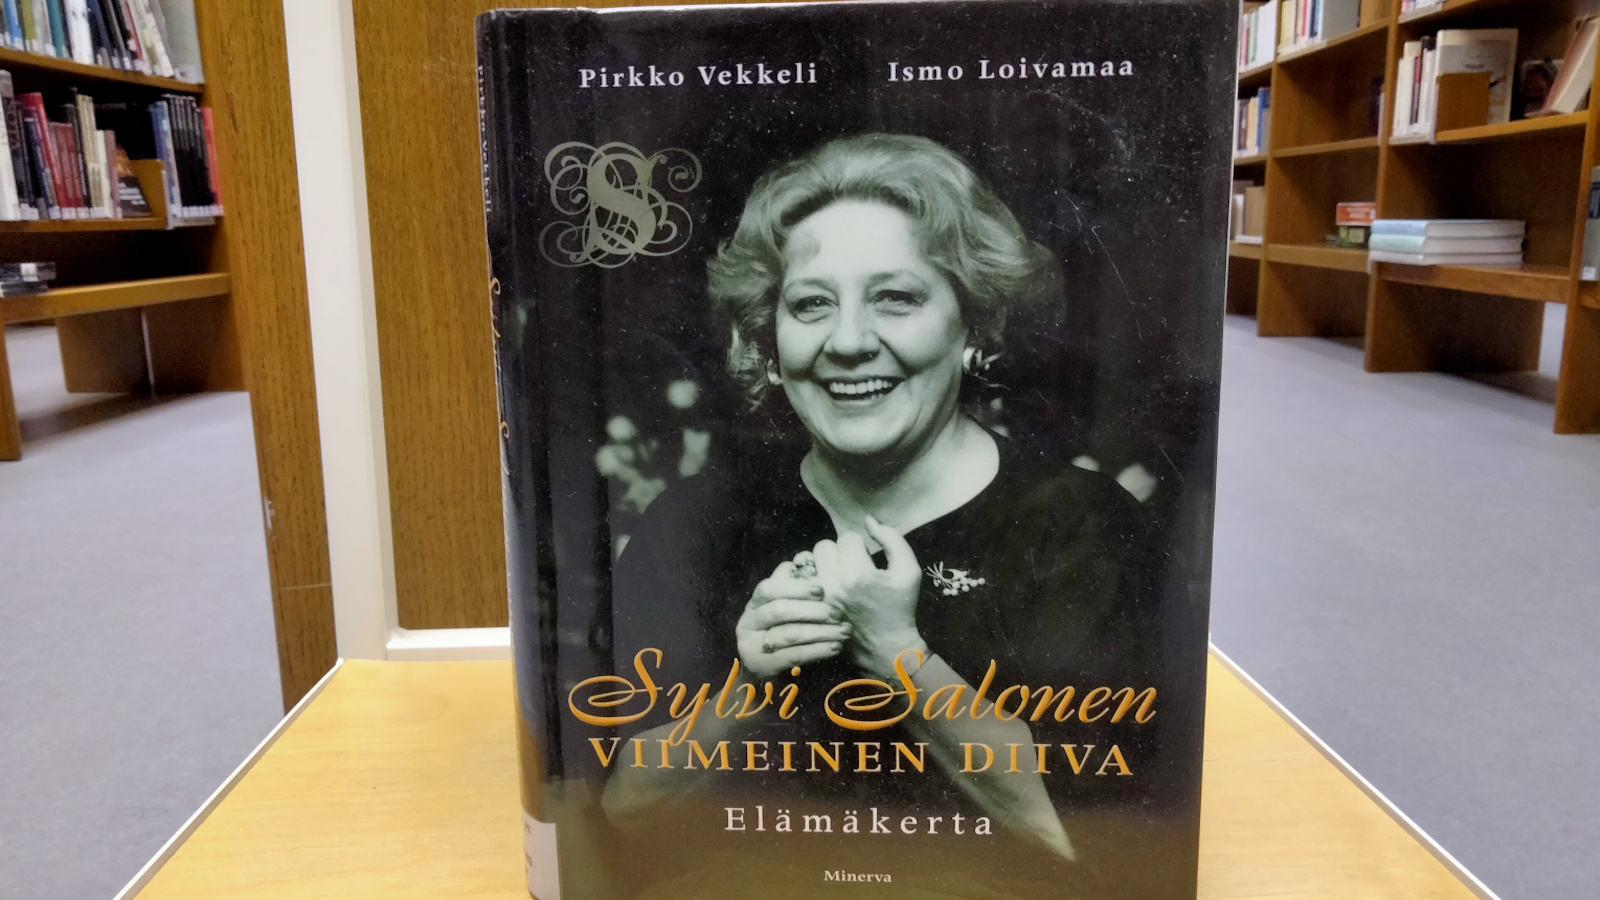 Sylvi Salosen elämänkerta Viimeinen diiva, jonka ovat kirjoittaneet Ismo Loivamaa ja Pirkko Vekkeli.